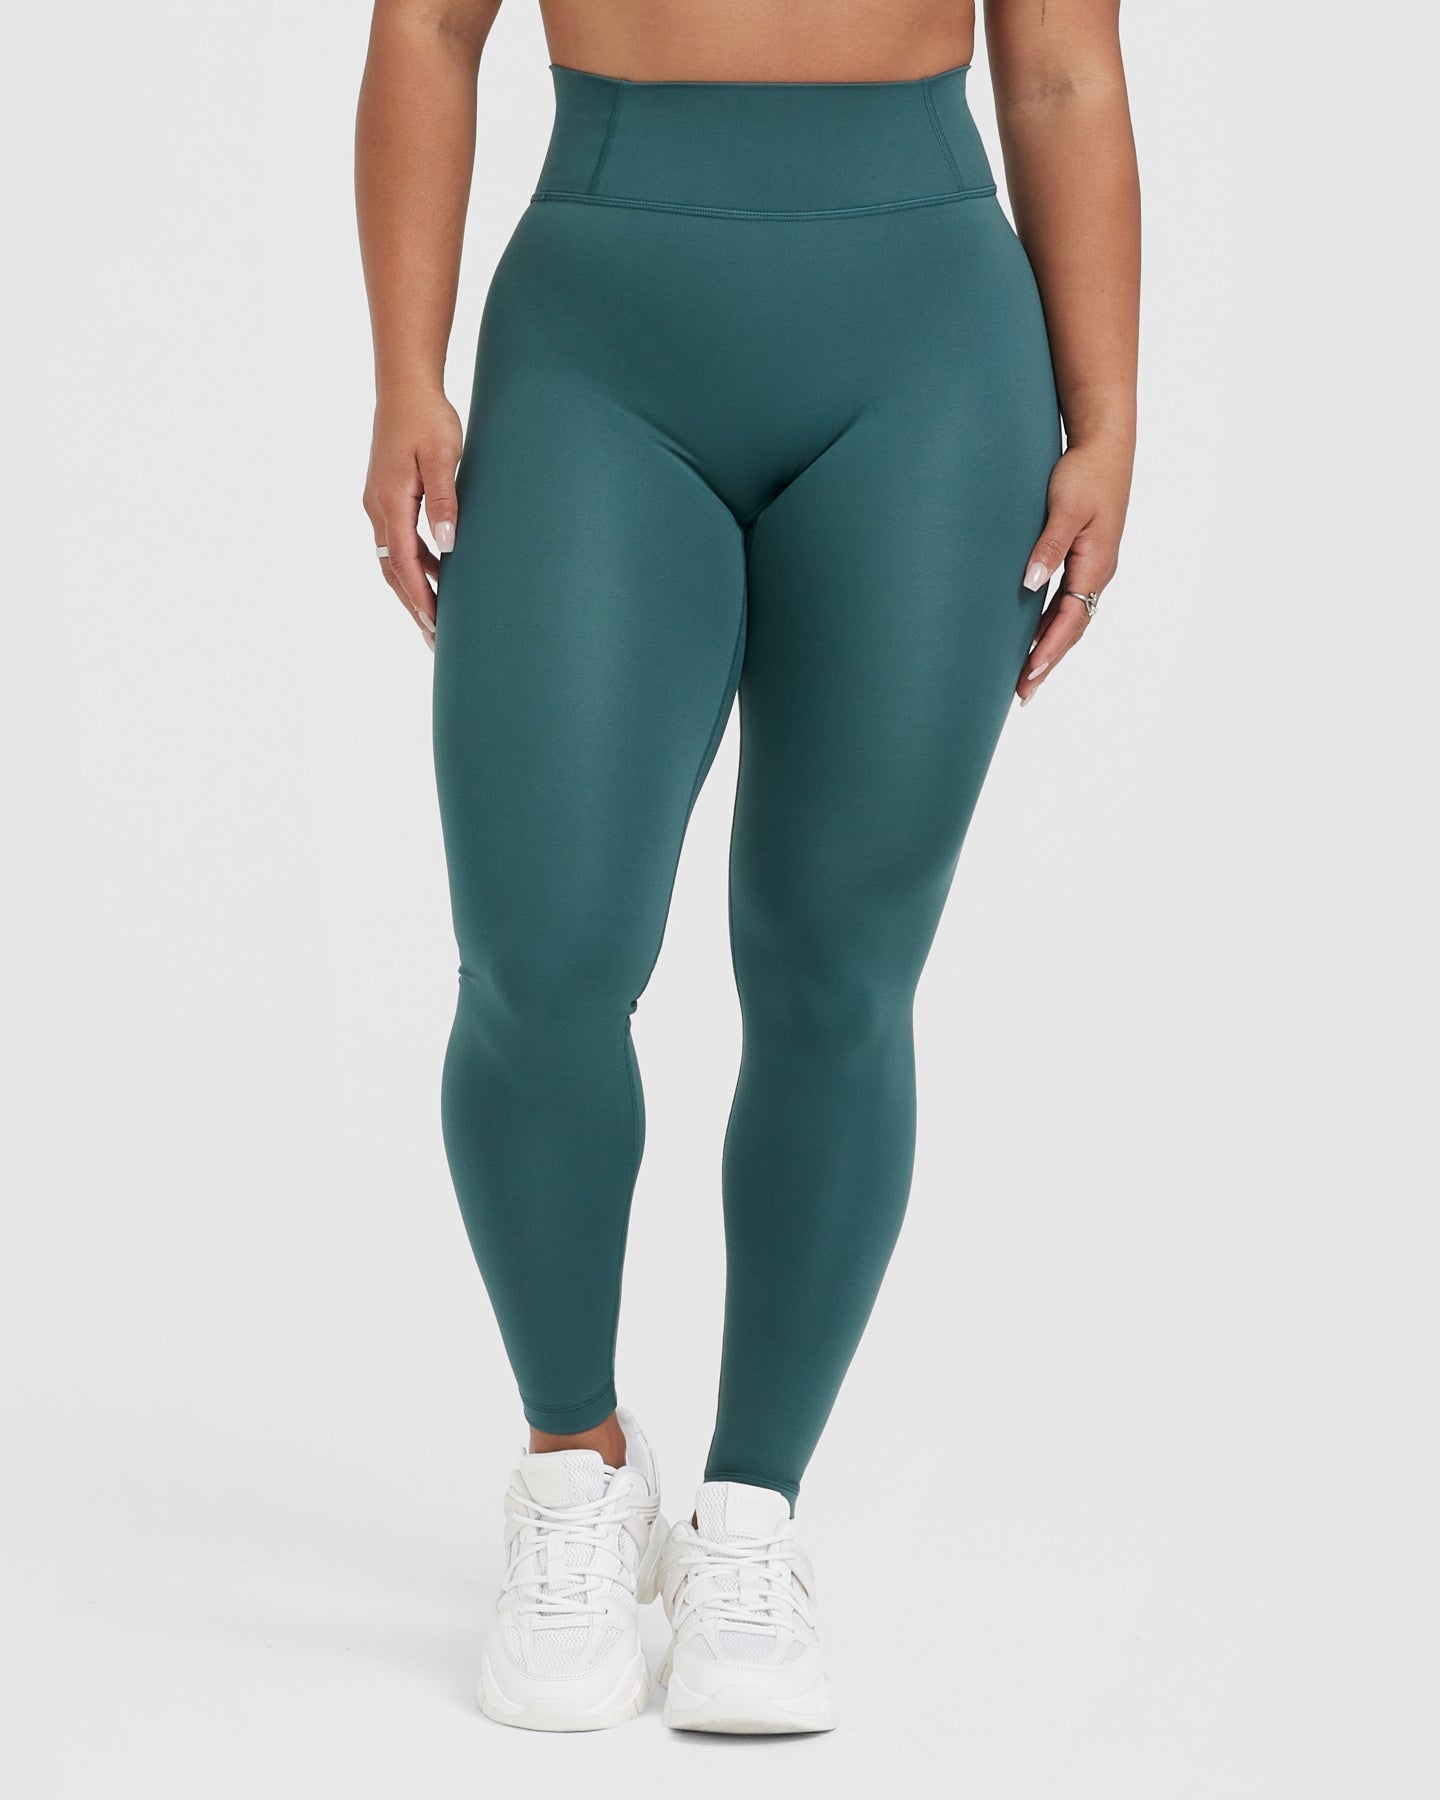 Buy Gaiam women sportswear fit training leggings deep teal combo Online